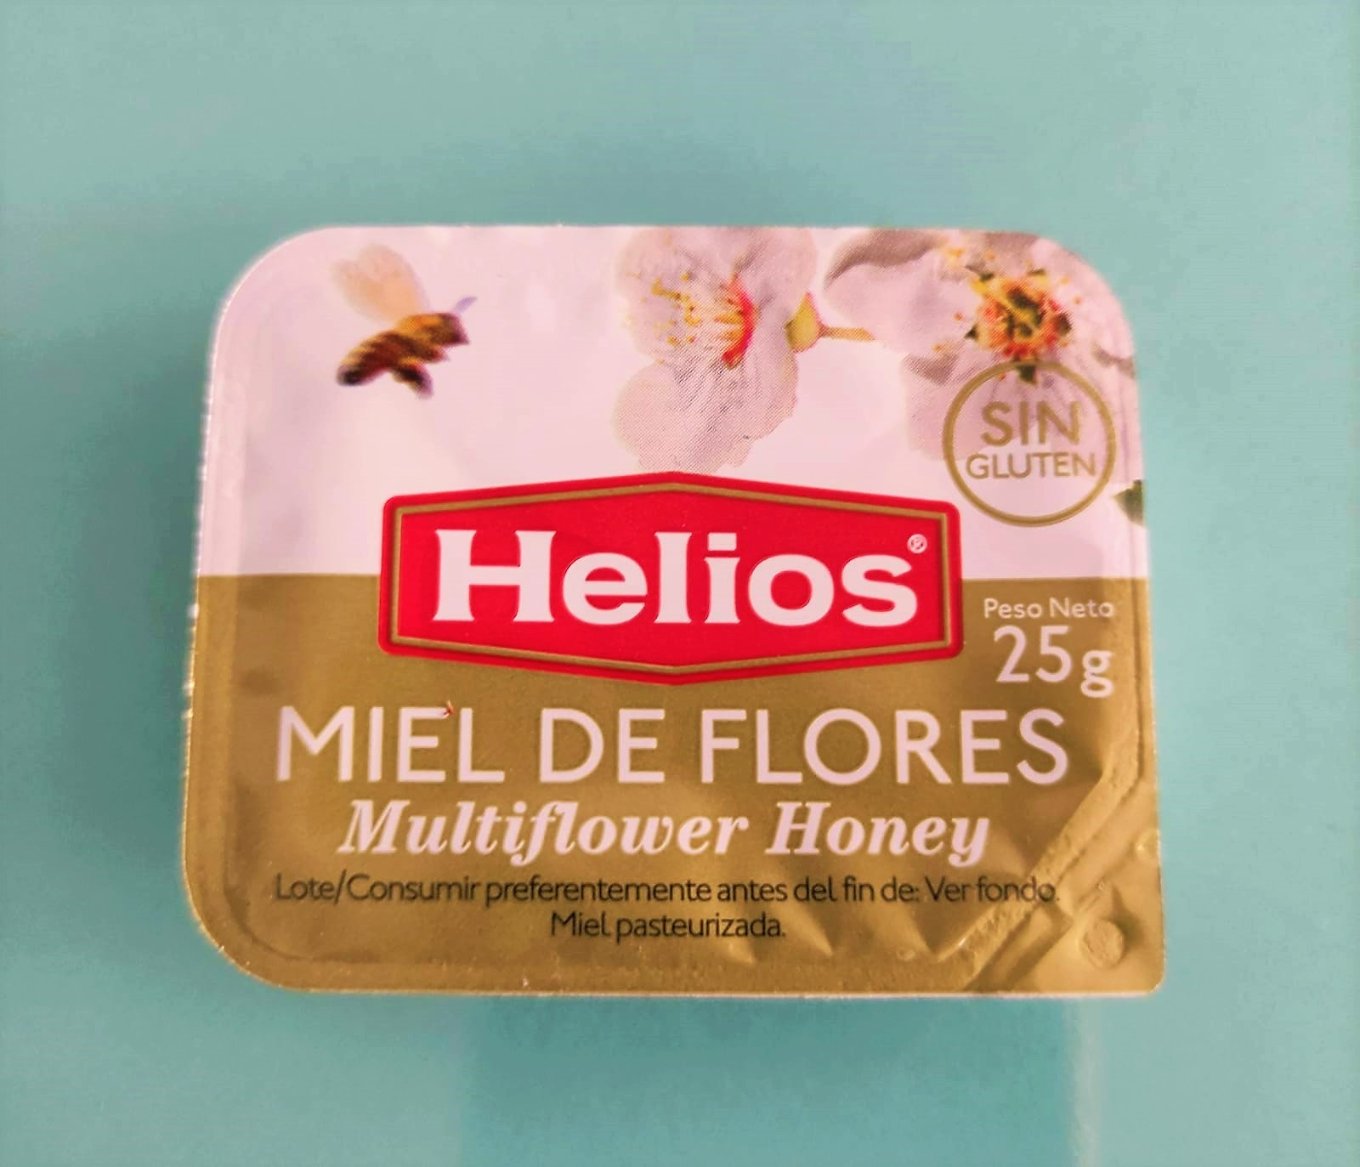 monodosis-miel-de-flores-desayuno-a-domicilio.jpg